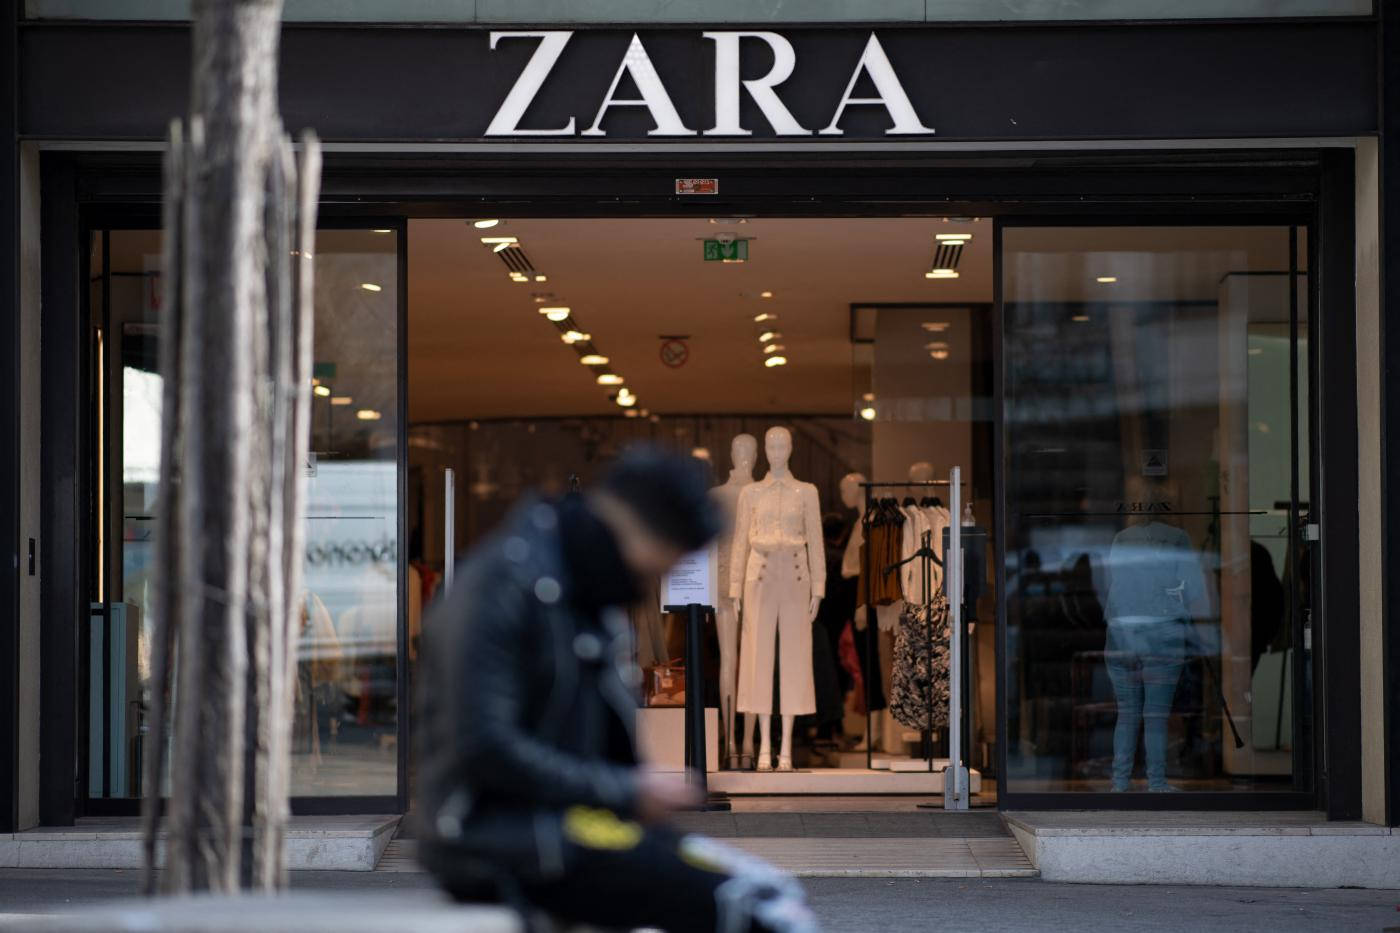 Zara Clothing Store Background